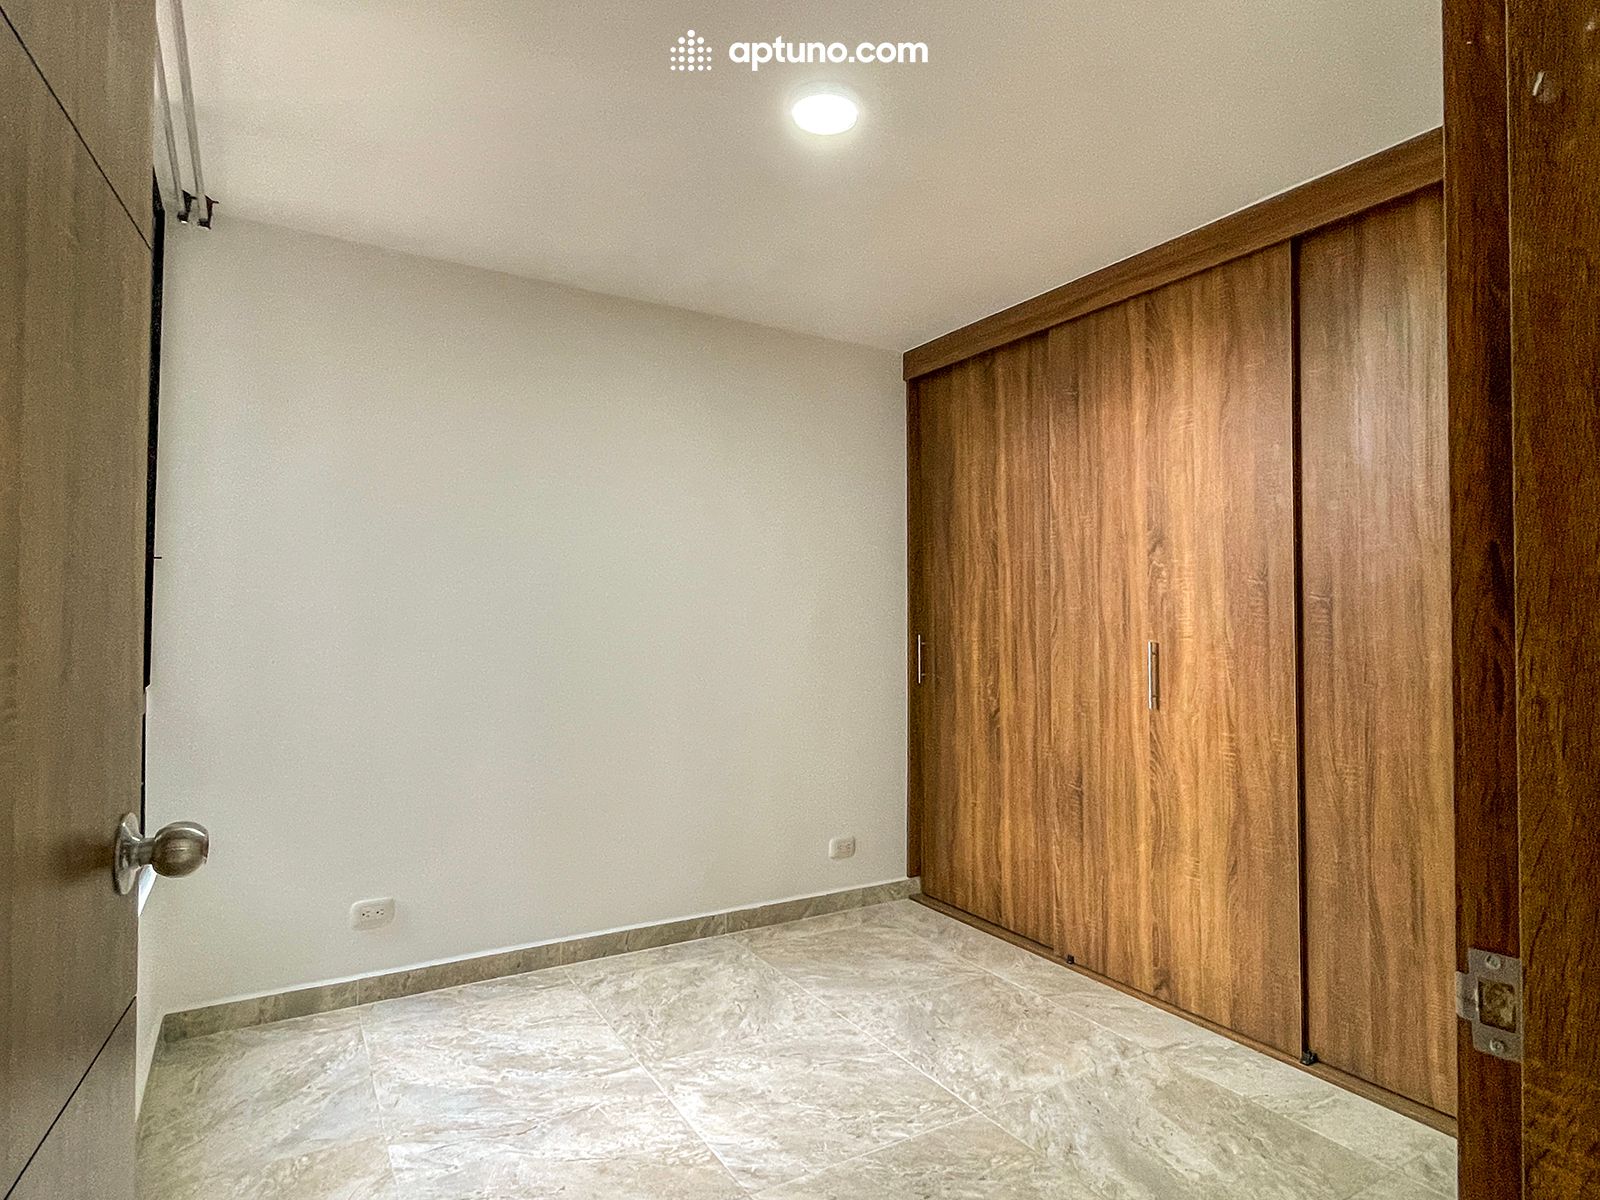 Apartamento en arriendo Chía 55 m² - $ 1.200.000